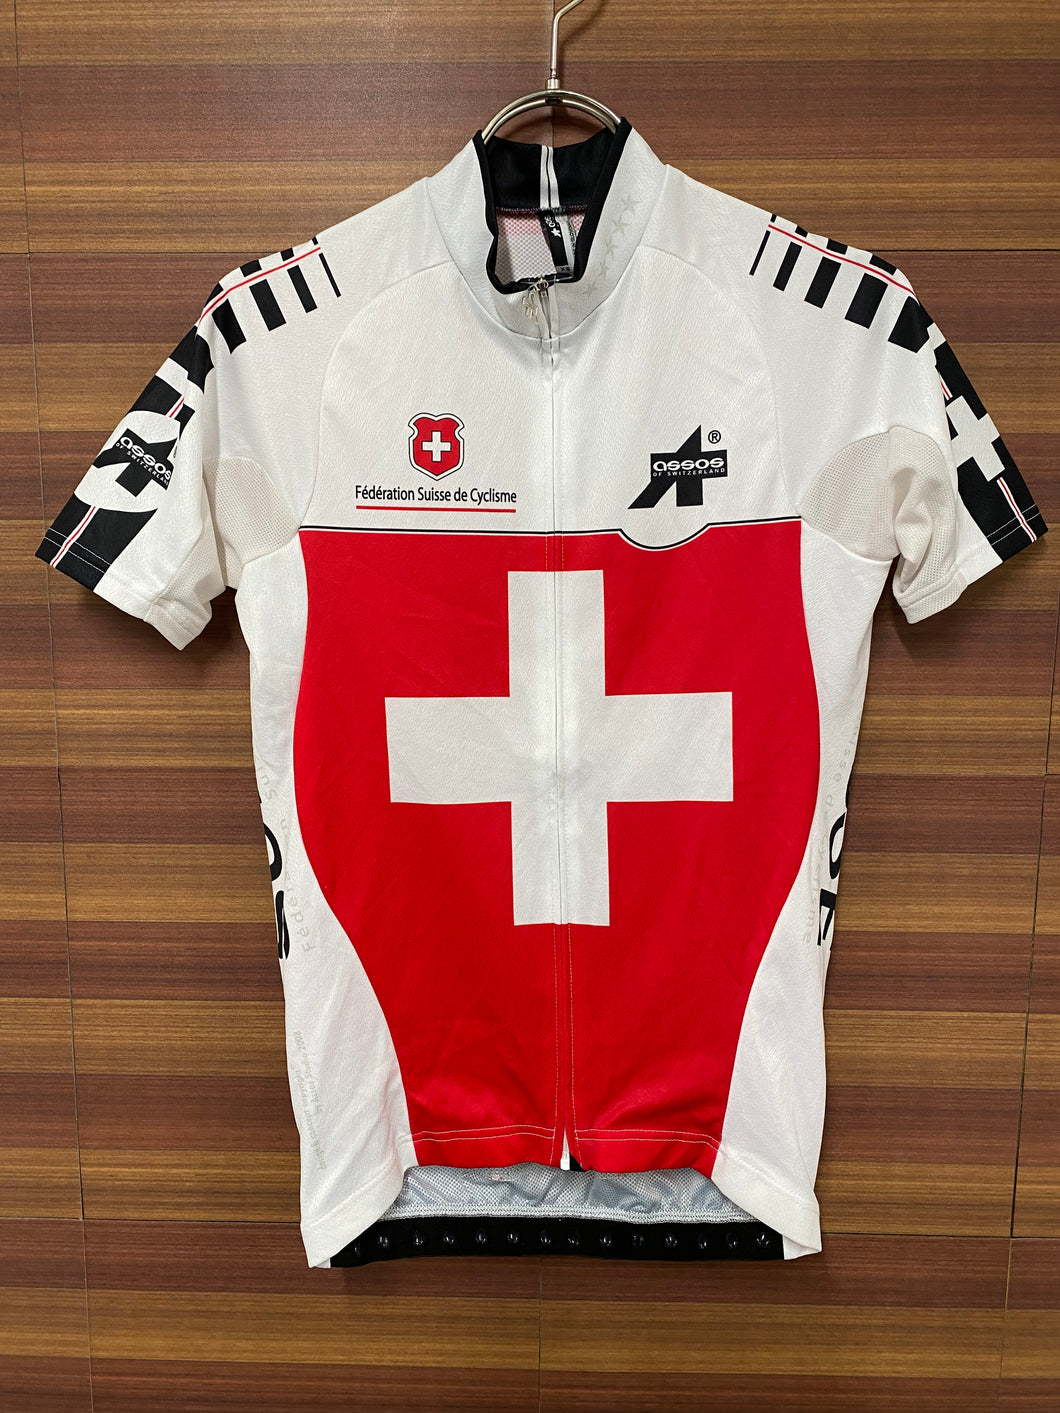 FQ074 アソス Assos スイスナショナル SWISS NATIONAL 半袖サイクルジャージ 白赤 XS